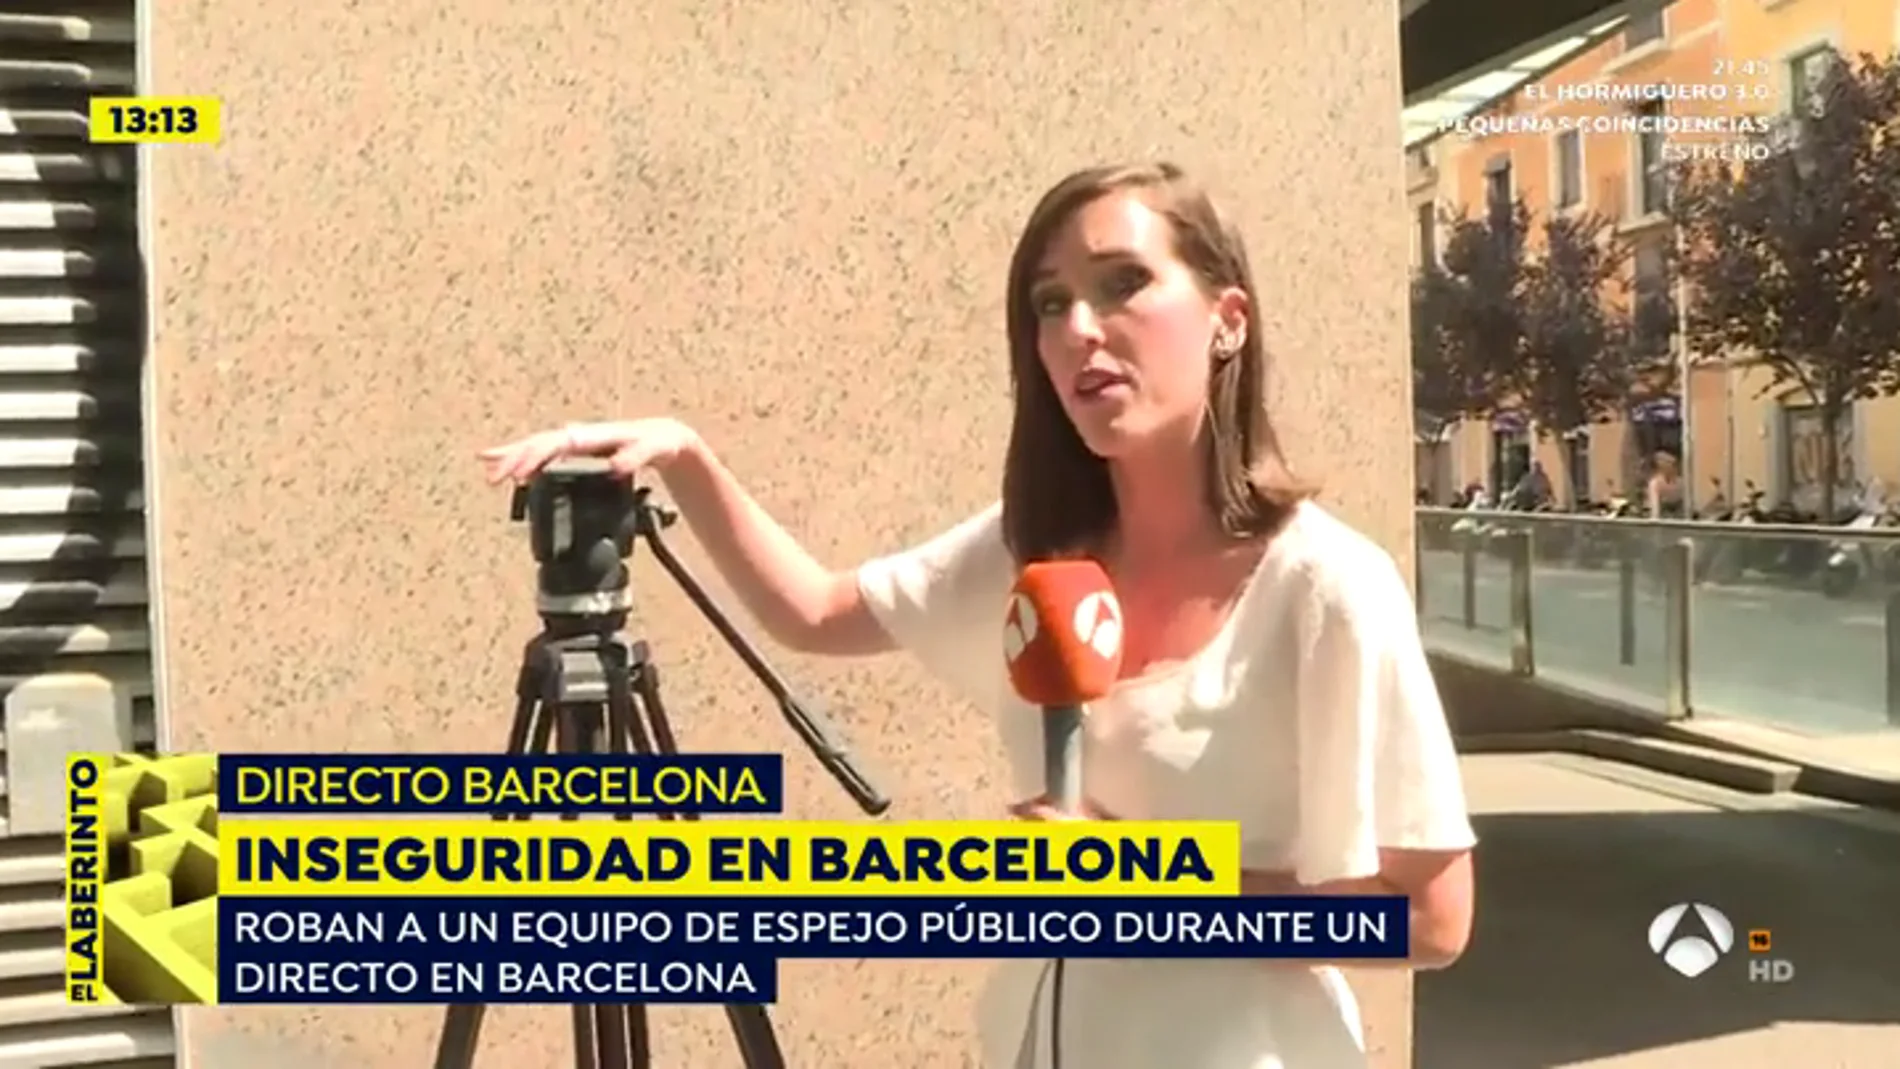 Inseguridad en Barcelona: roban a un equipo de 'Espejo Público'